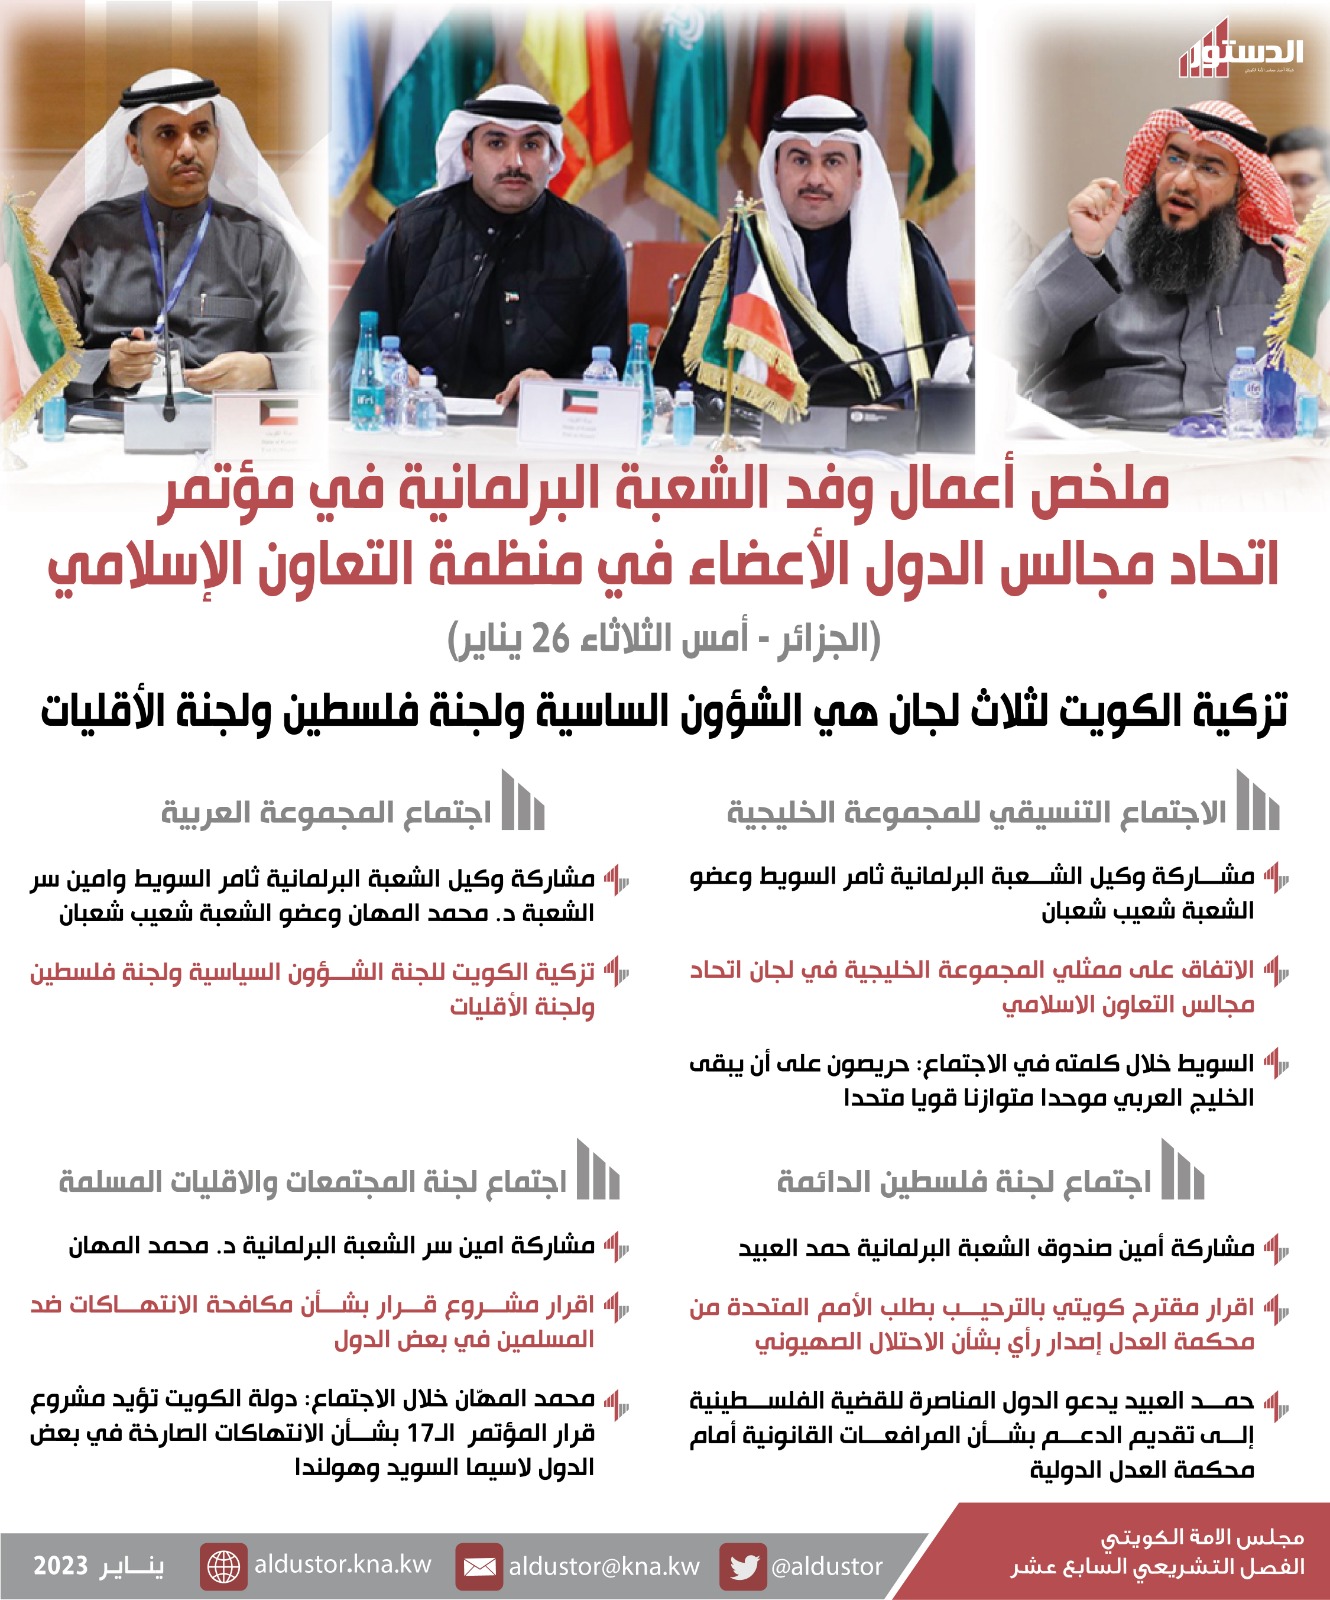 تزكية الكويت لثلاث لجان في اتحاد مجالس دول منظمة التعاون الإسلامي والموافقة على مقترح كويتي بشأن فلسطين